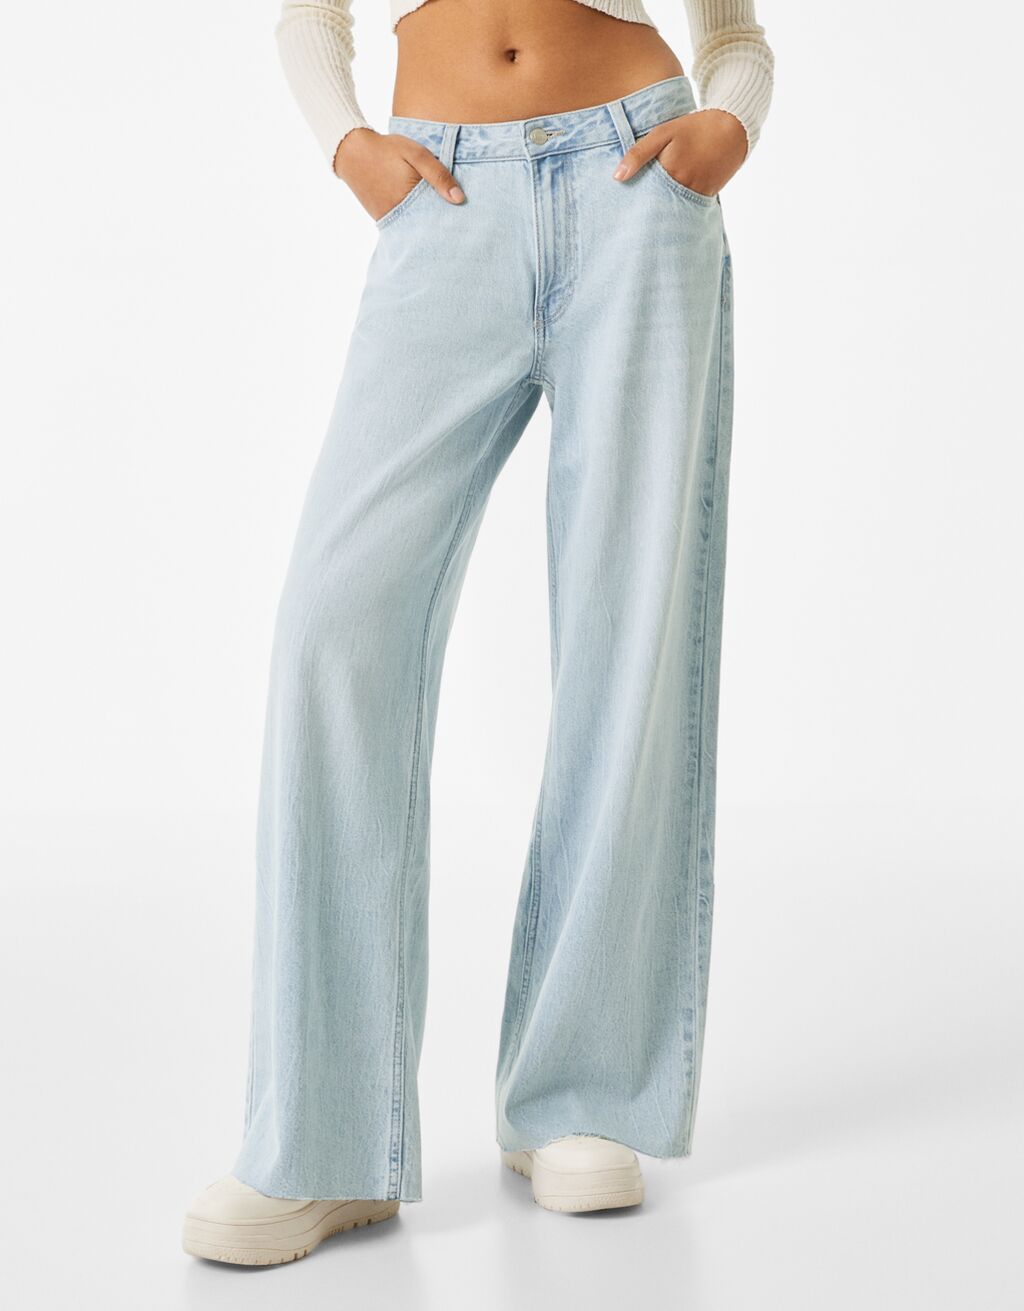 Voľné vrecovité džínsy s nízkym pásom